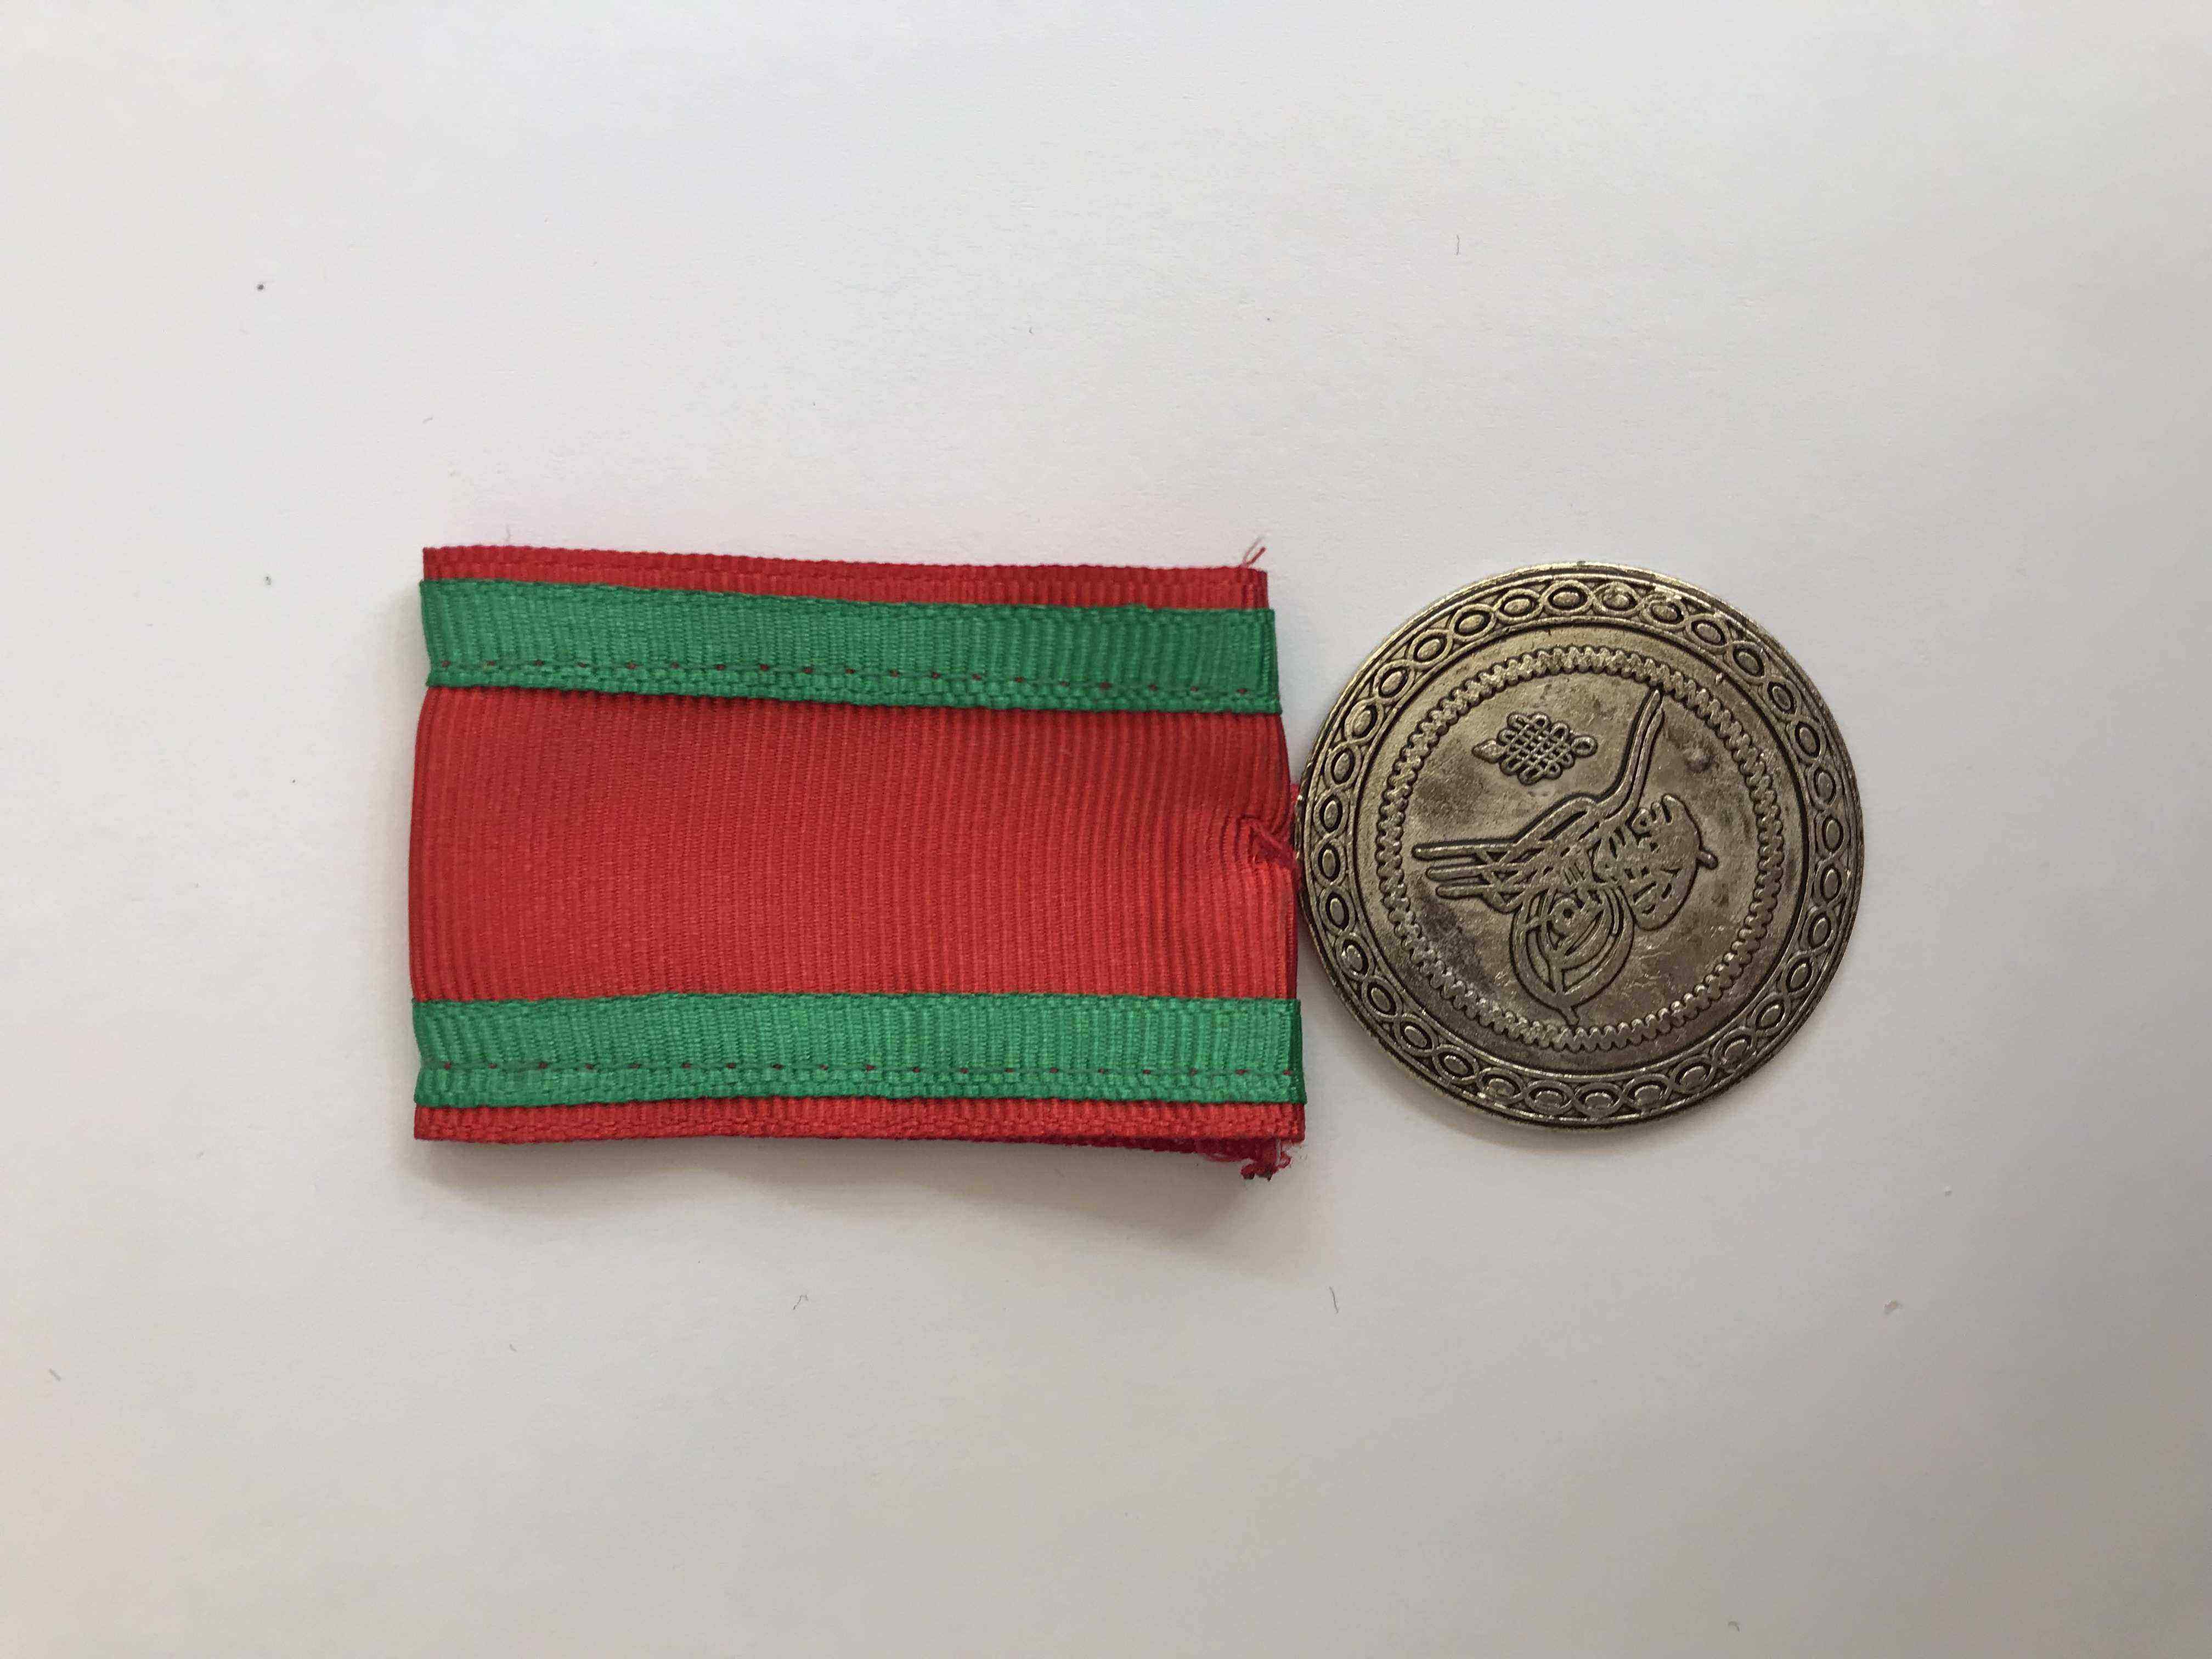 Osmanlı Tuğralı Nişan | Ottoman Monogram Medal